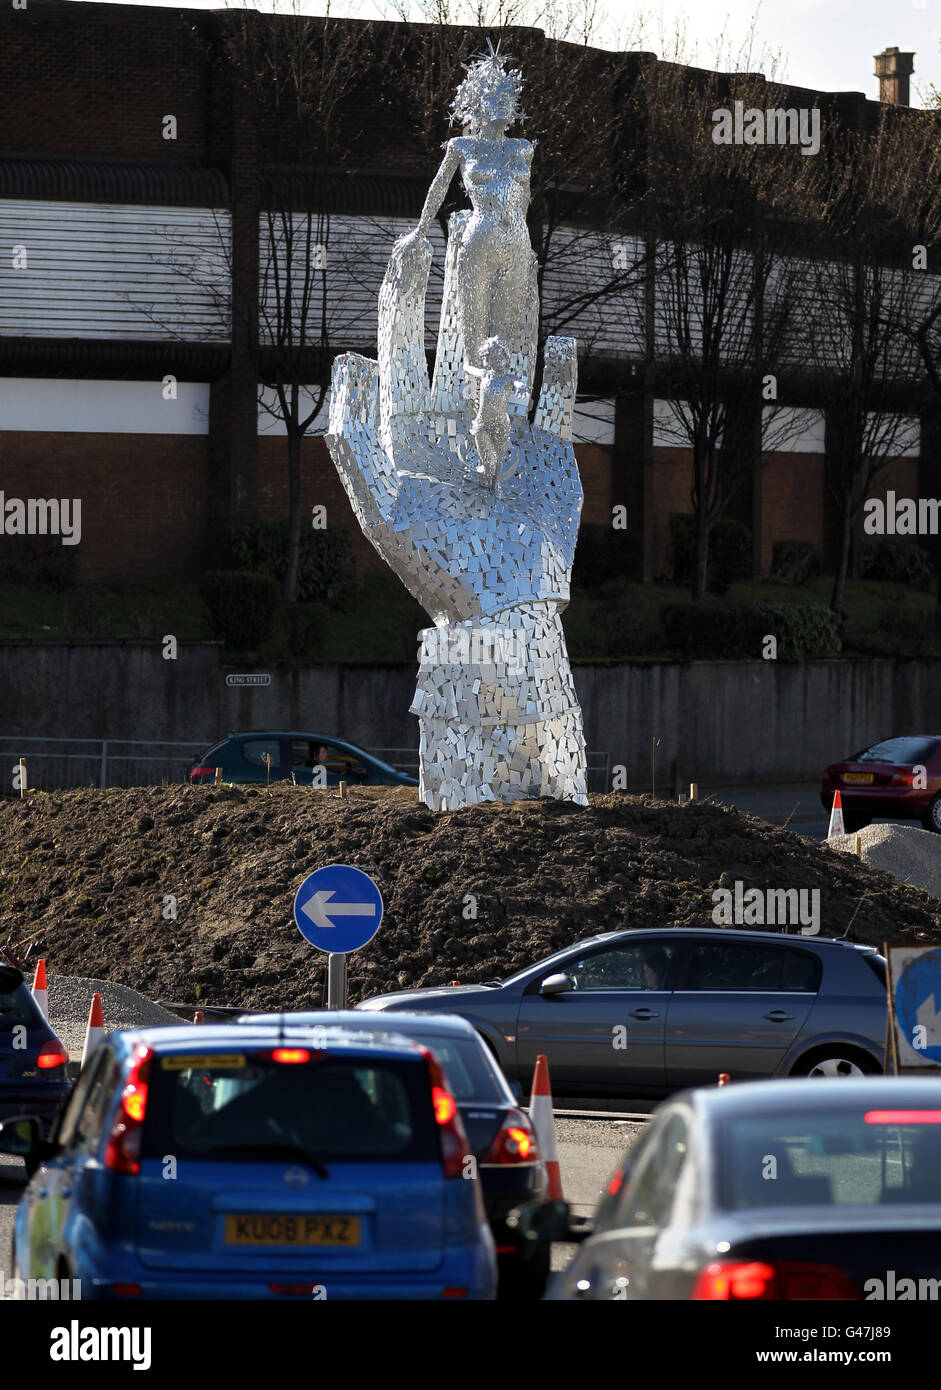 Una scultura in acciaio alta 8m di una mano gigante che sostiene una donna e un bambino chiamato 'Lifeline' dall'artista Andy Scott, ispirato dal lavoro dei servizi di emergenza, è stato installato oggi alla rotonda di Shillinghill in Alloa. Foto Stock